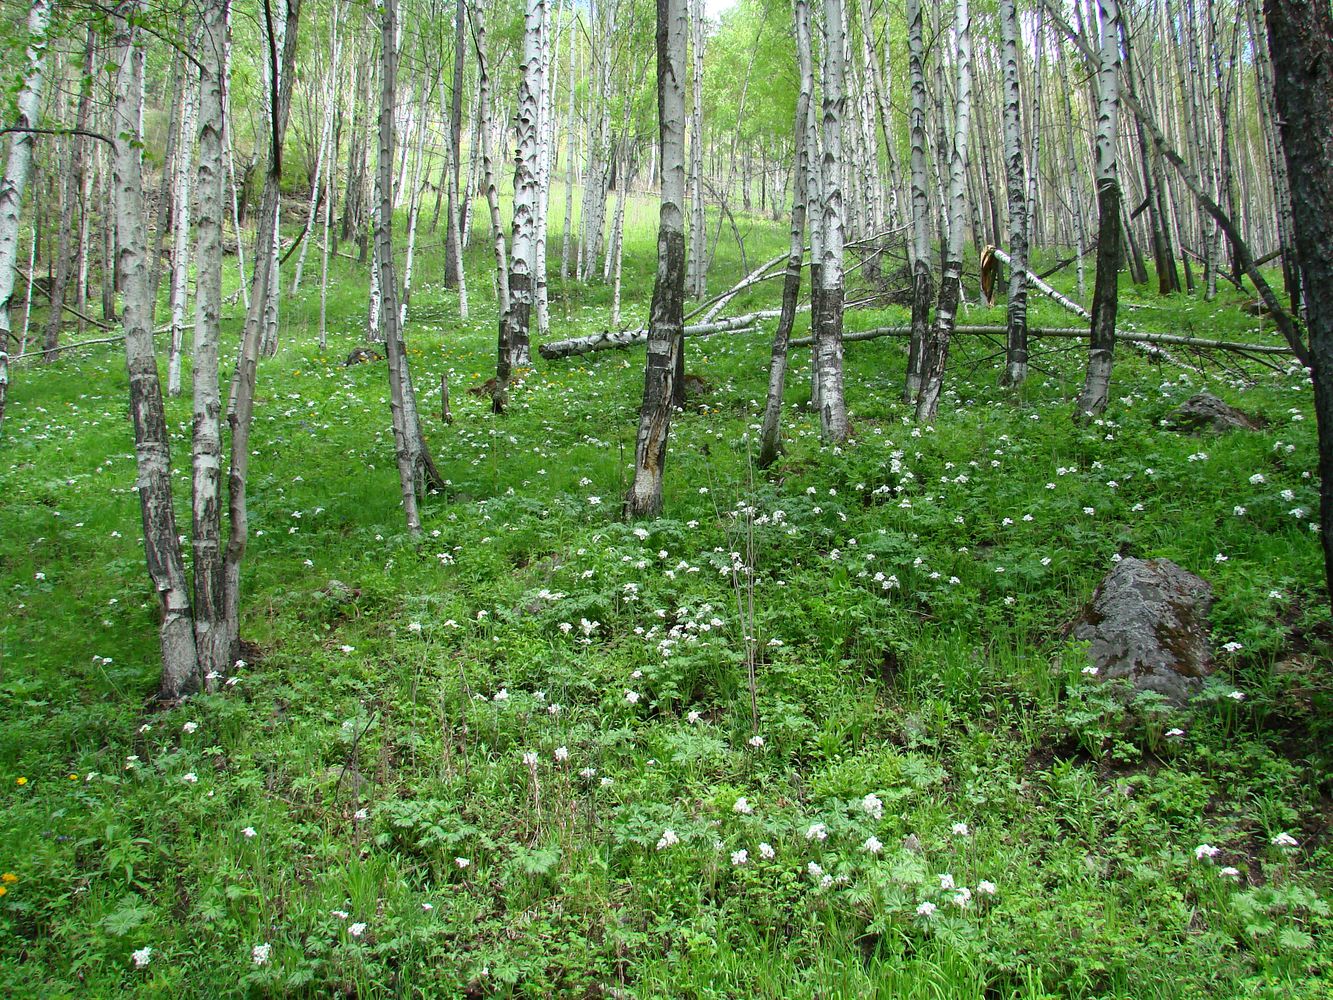 Кругобайкальская железная дорога, image of landscape/habitat.